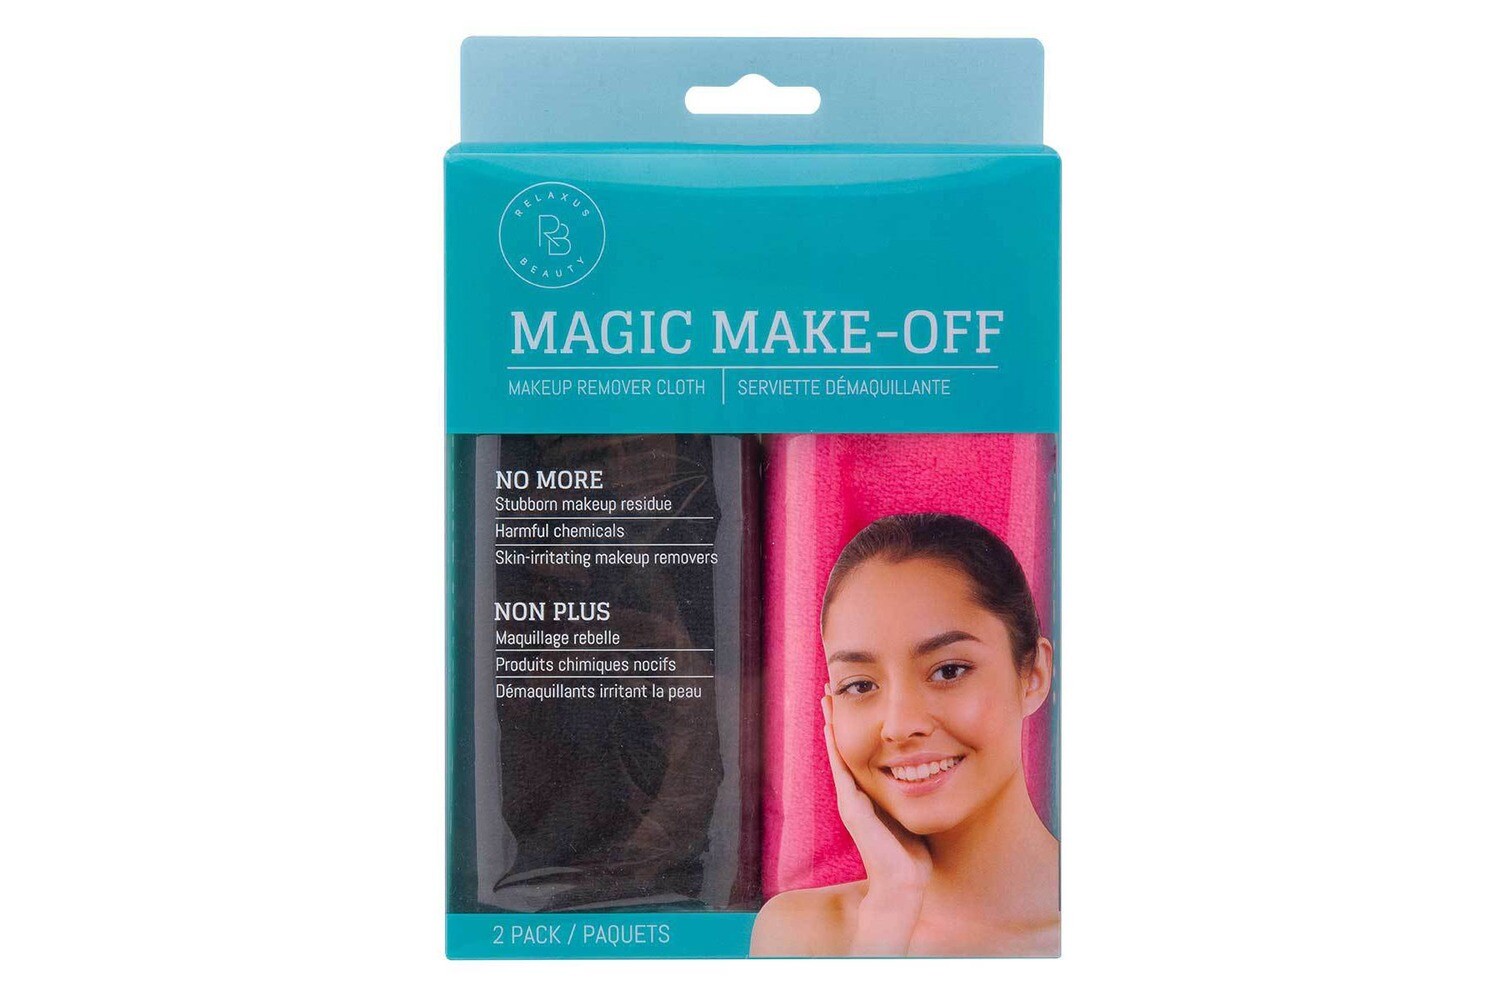 Magic Make-off Makeup Remover Cloth